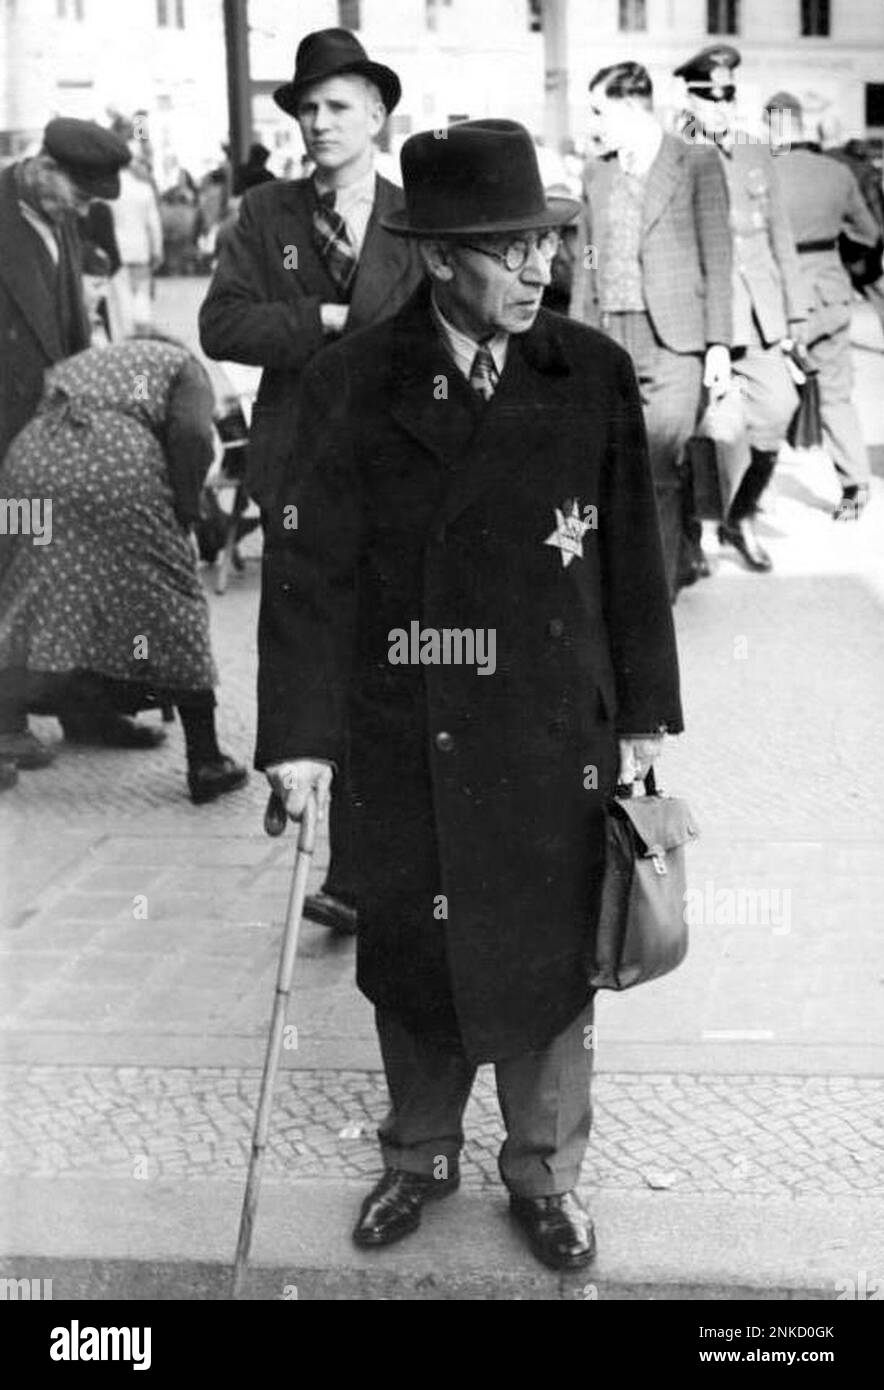 1941 waren alle Juden verpflichtet, den gelben Stern auf ihrer Kleidung zu tragen. Photo Bundesarchiv, Bild 183-R99993/CC-BY-SA 3,0, CC BY-SA 3,0 de, https://commons.wikimedia.org/w/index.php?curid=5368861 Stockfoto